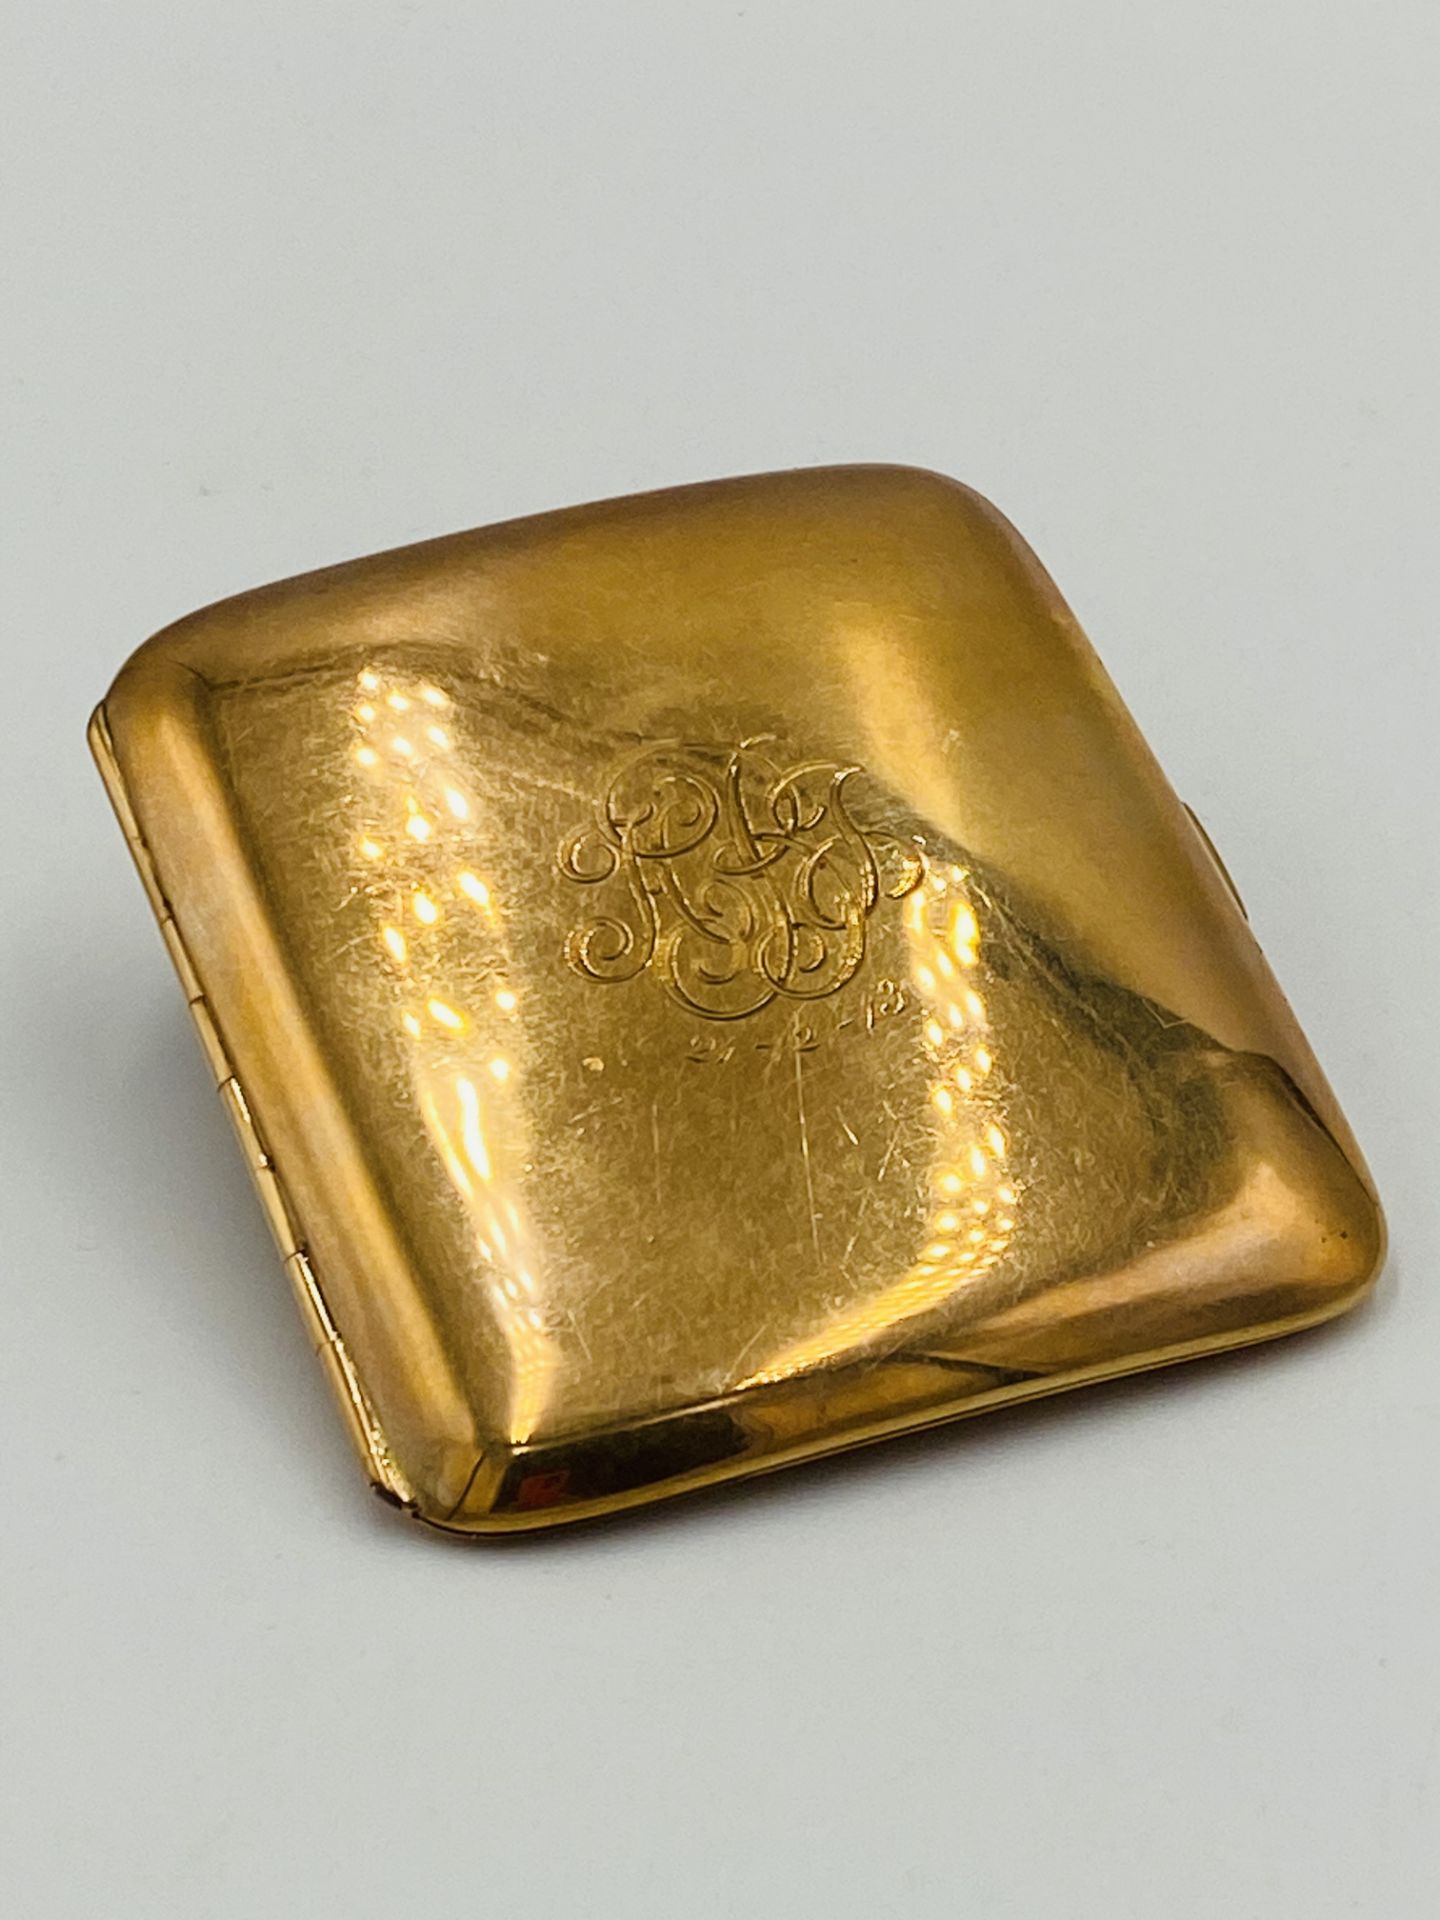 9ct gold cigarette case, 71.3g